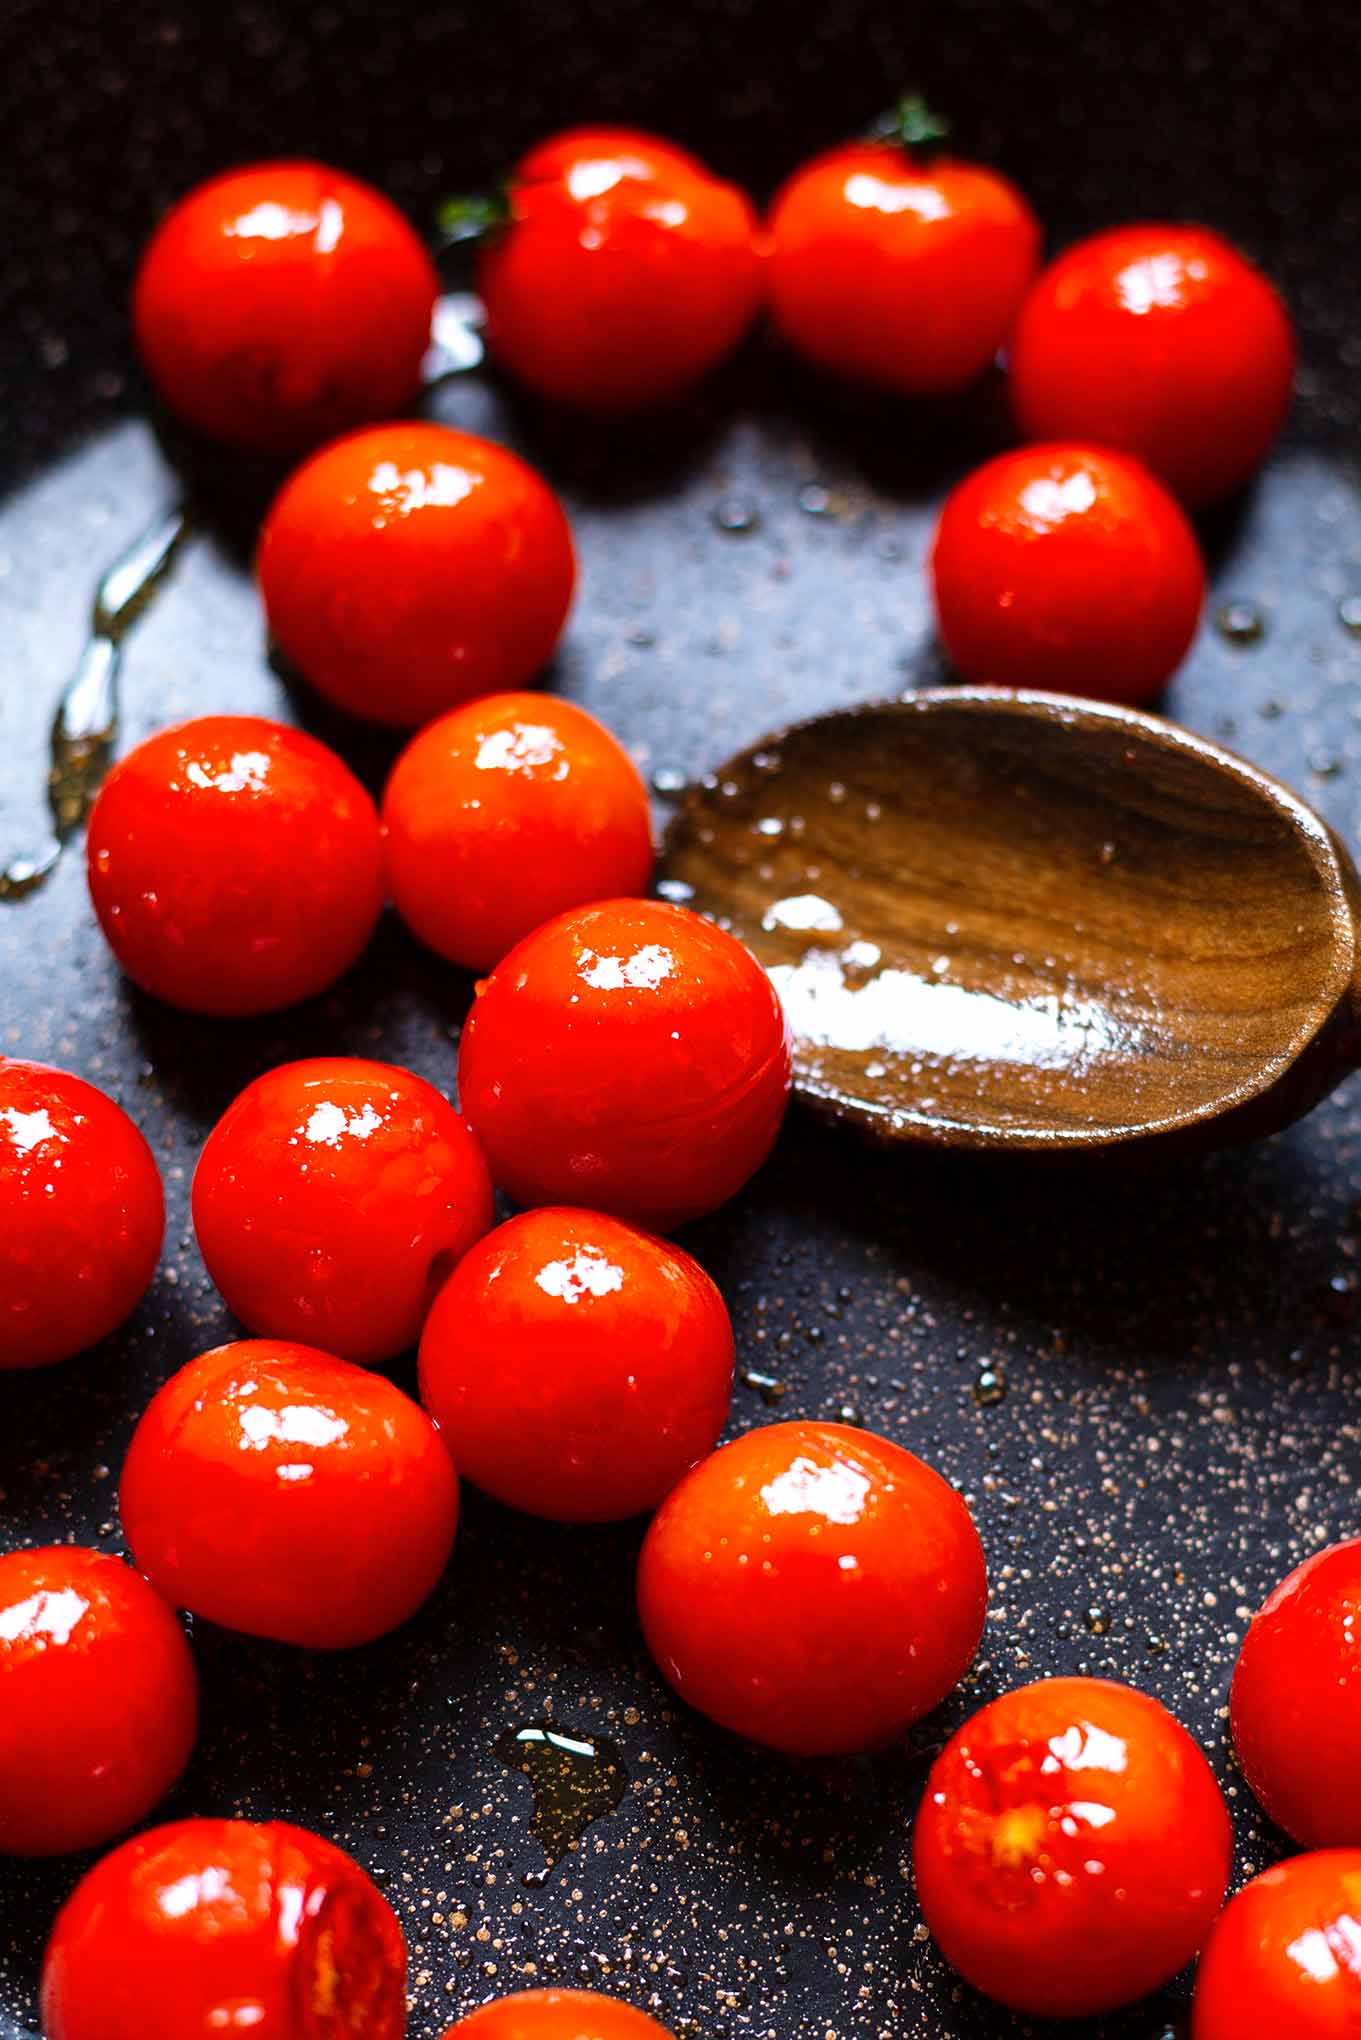 Salbei-Gnocchi mit gebratenen Tomaten, Butter und Olivenöl. Dieses super einfache 5 Zutaten Rezept ist unser liebster Feierabend-Quickie! Kochkarussell - dein Foodblog für schnelle & einfache Feierabendküche.